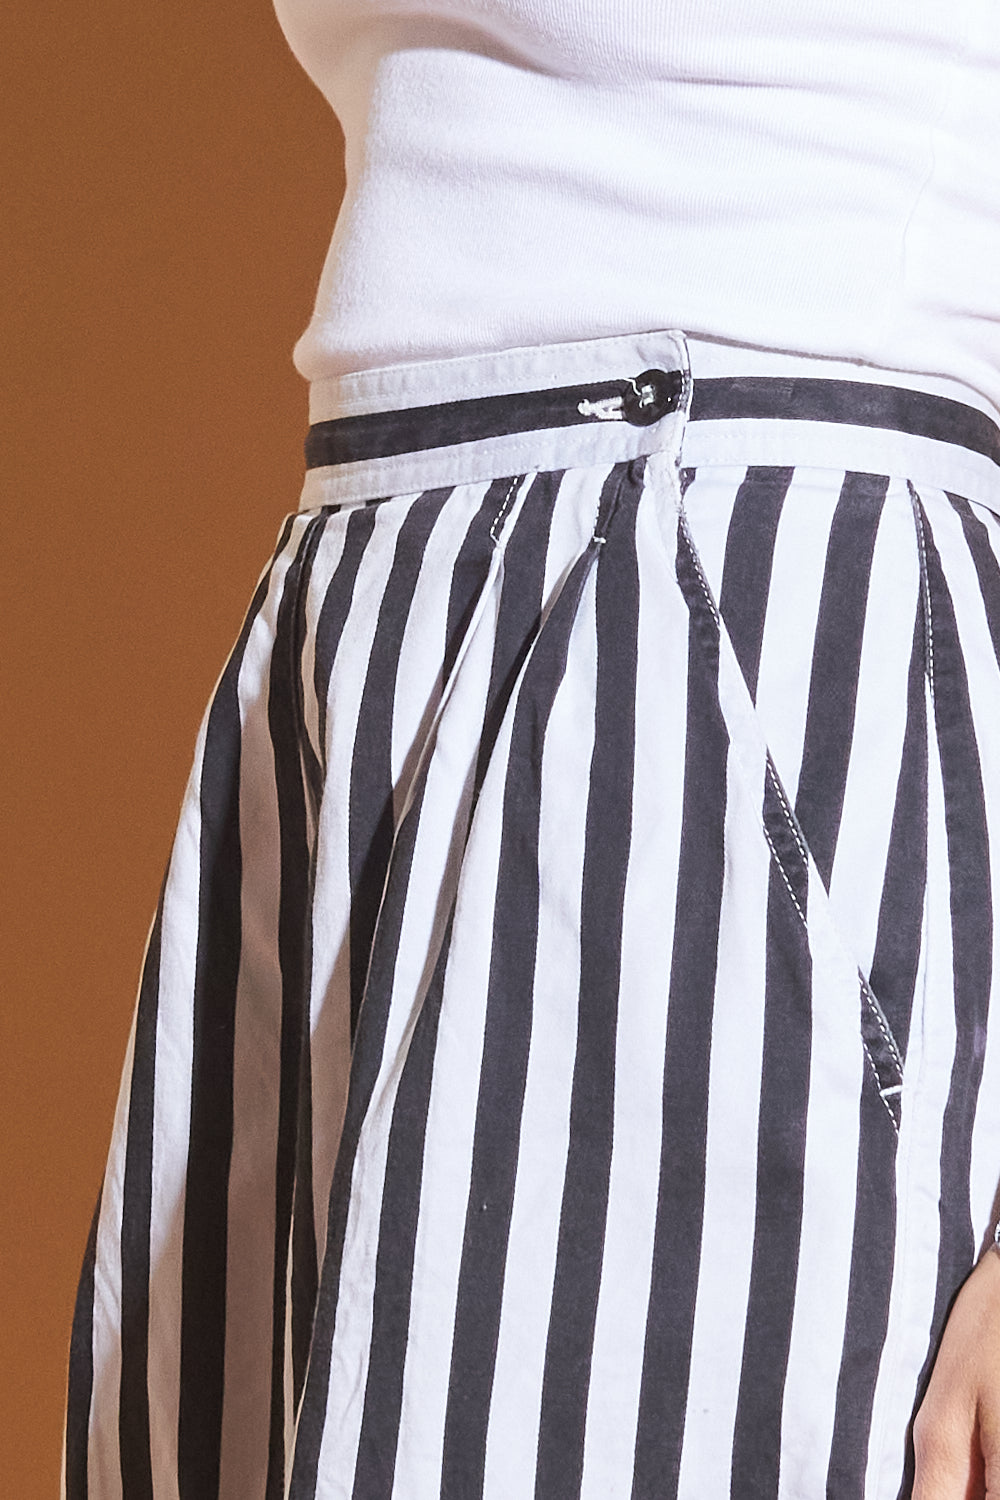 Vintage B&W Striped Shorts, Sz 24/25"